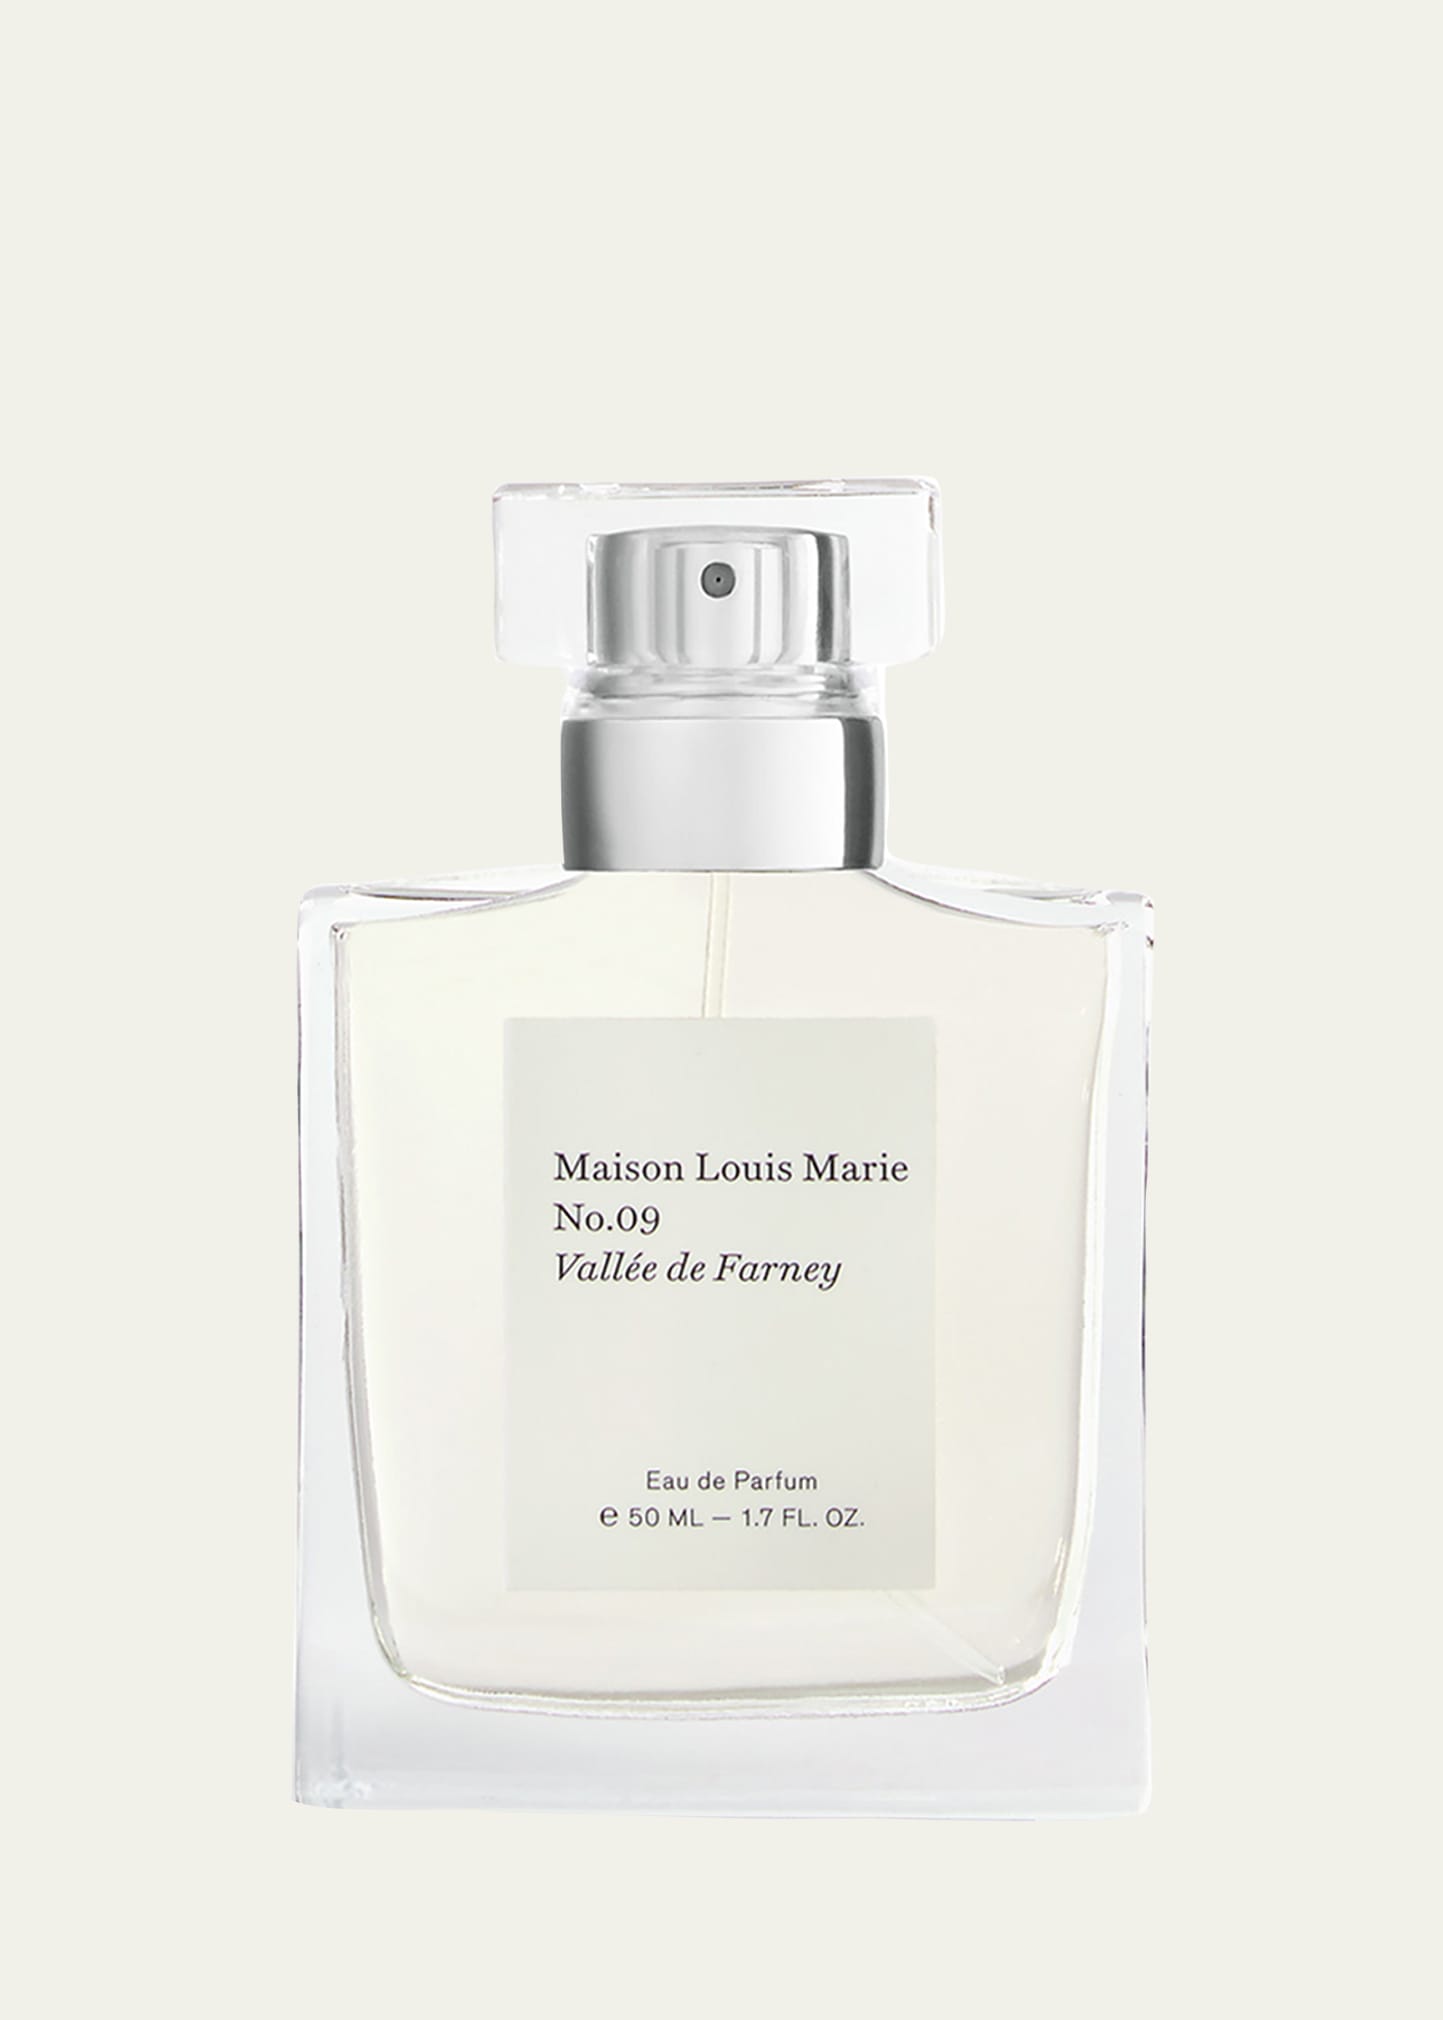 Maison Louis Marie 1.7 oz. No.09 Vallee Farney Eau de Parfum